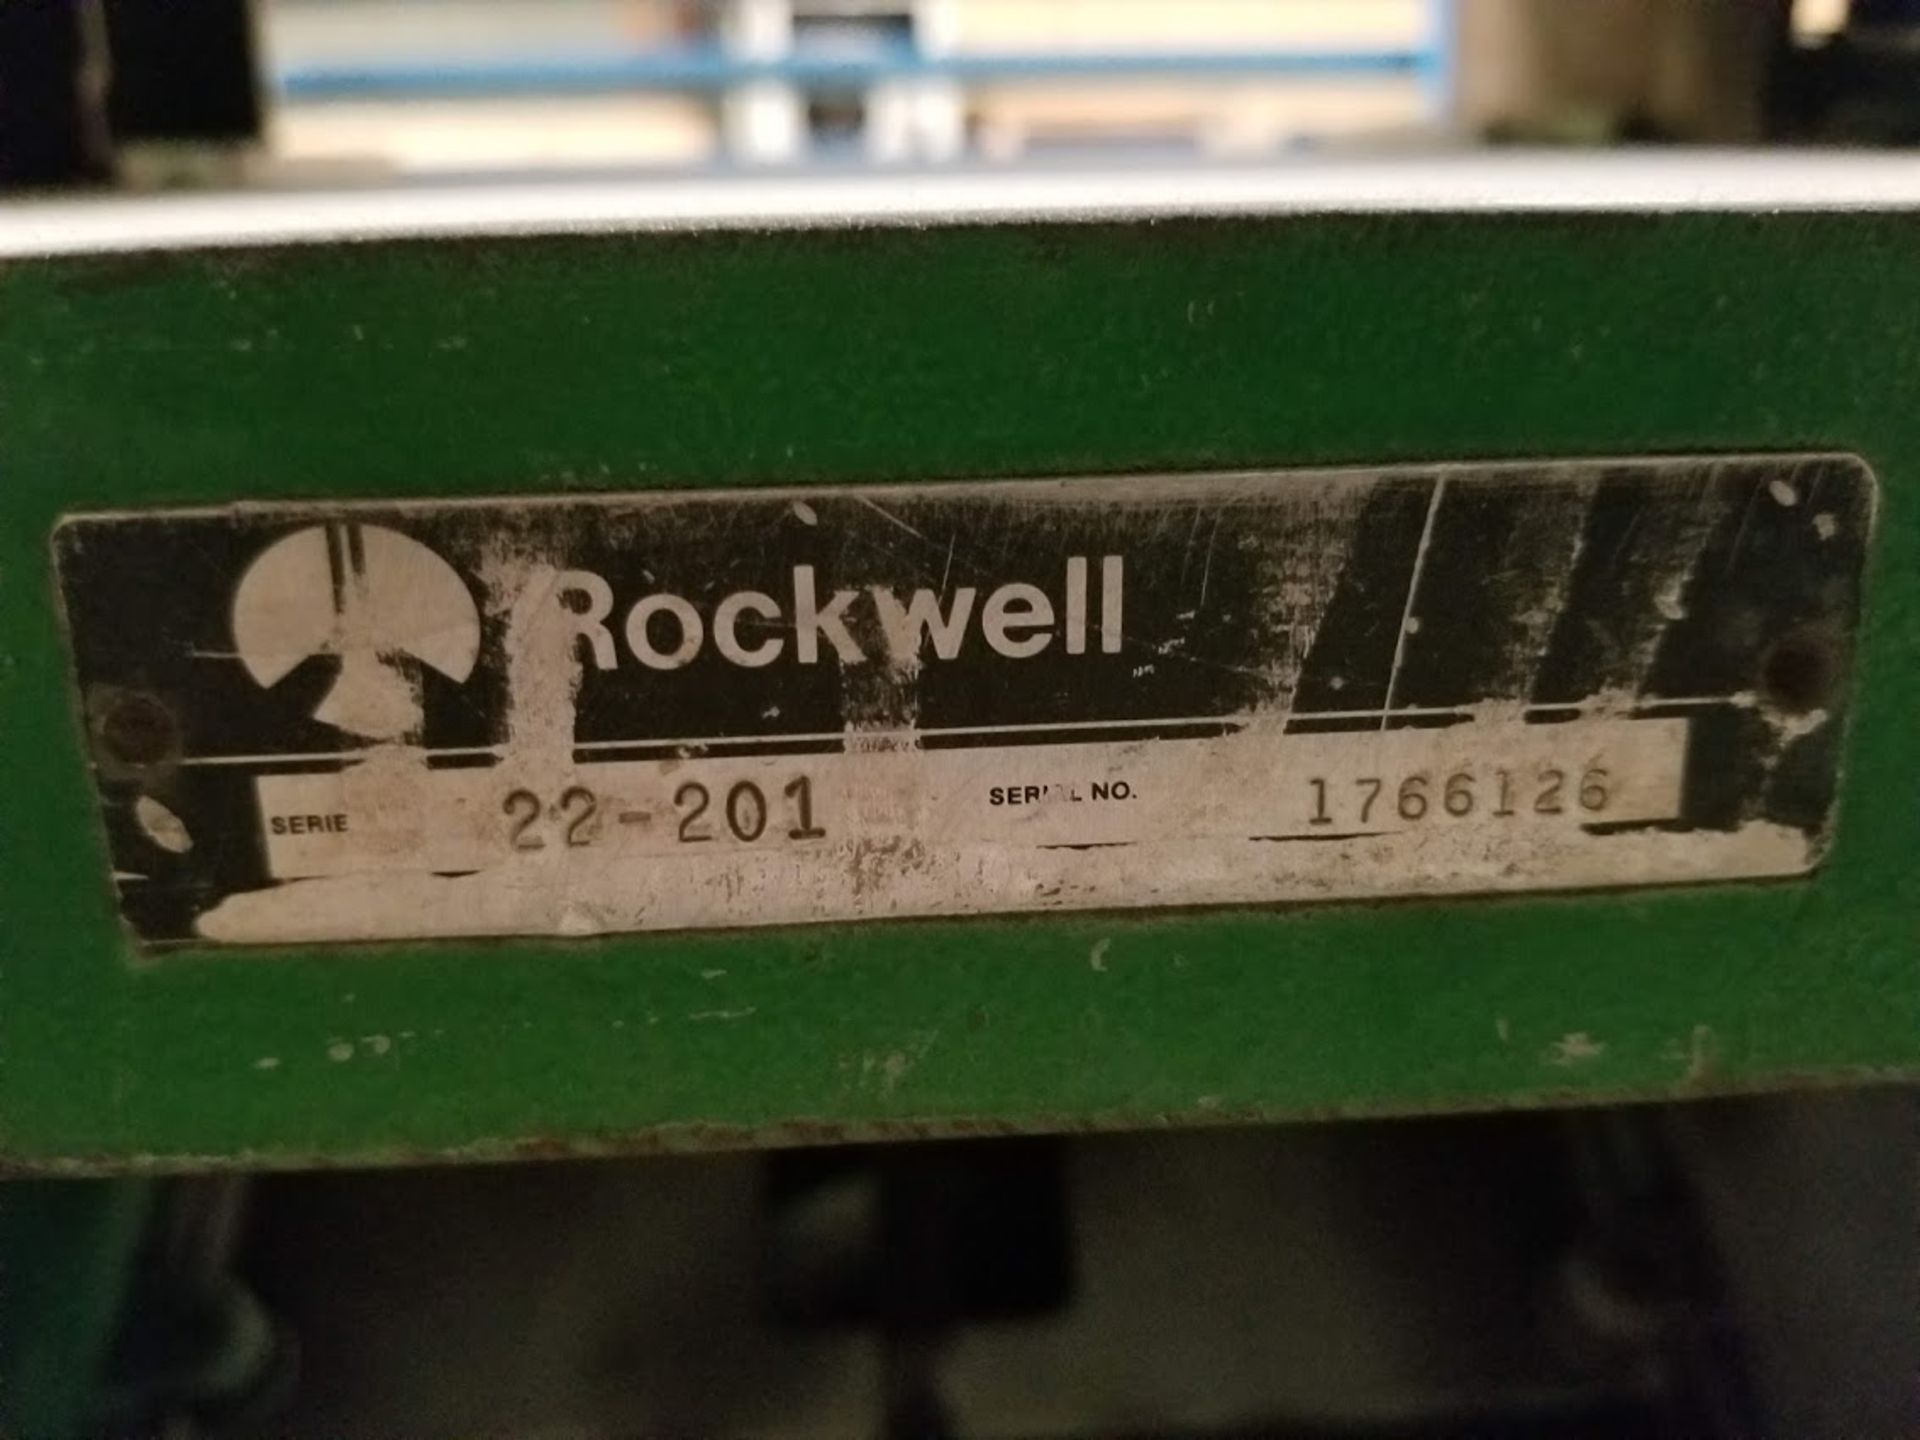 Rockwell 18" Wood Planer Model #:22-201 5HP 230V 1PH - Image 4 of 5